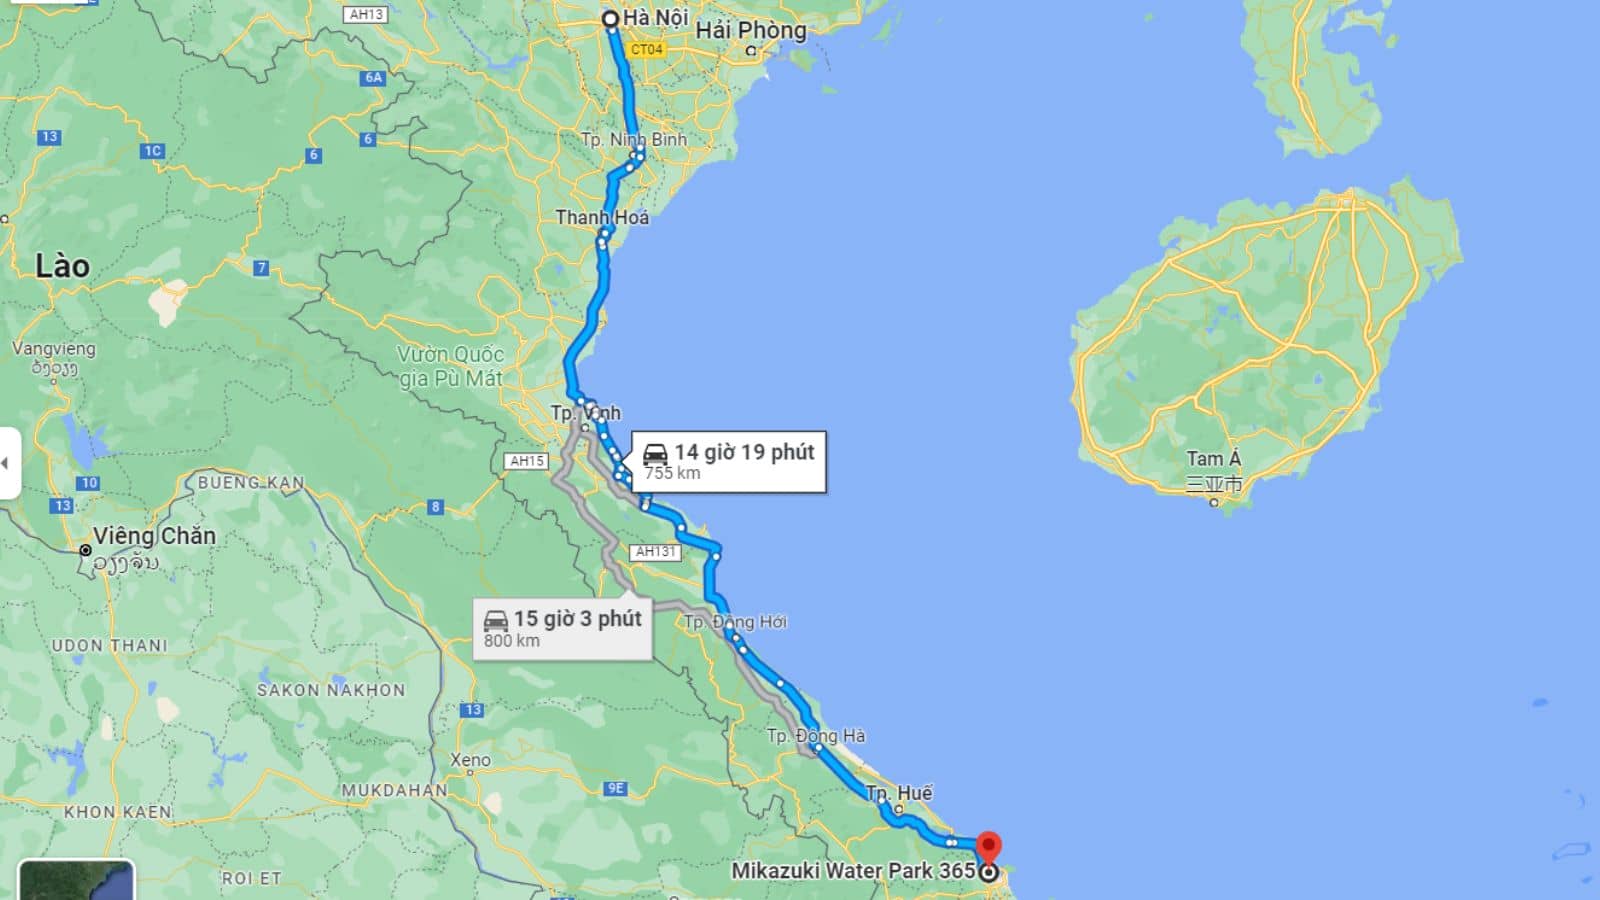 Quãng đường di chuyển từ Hà Nội đến khu suối nước nóng Mikazuki